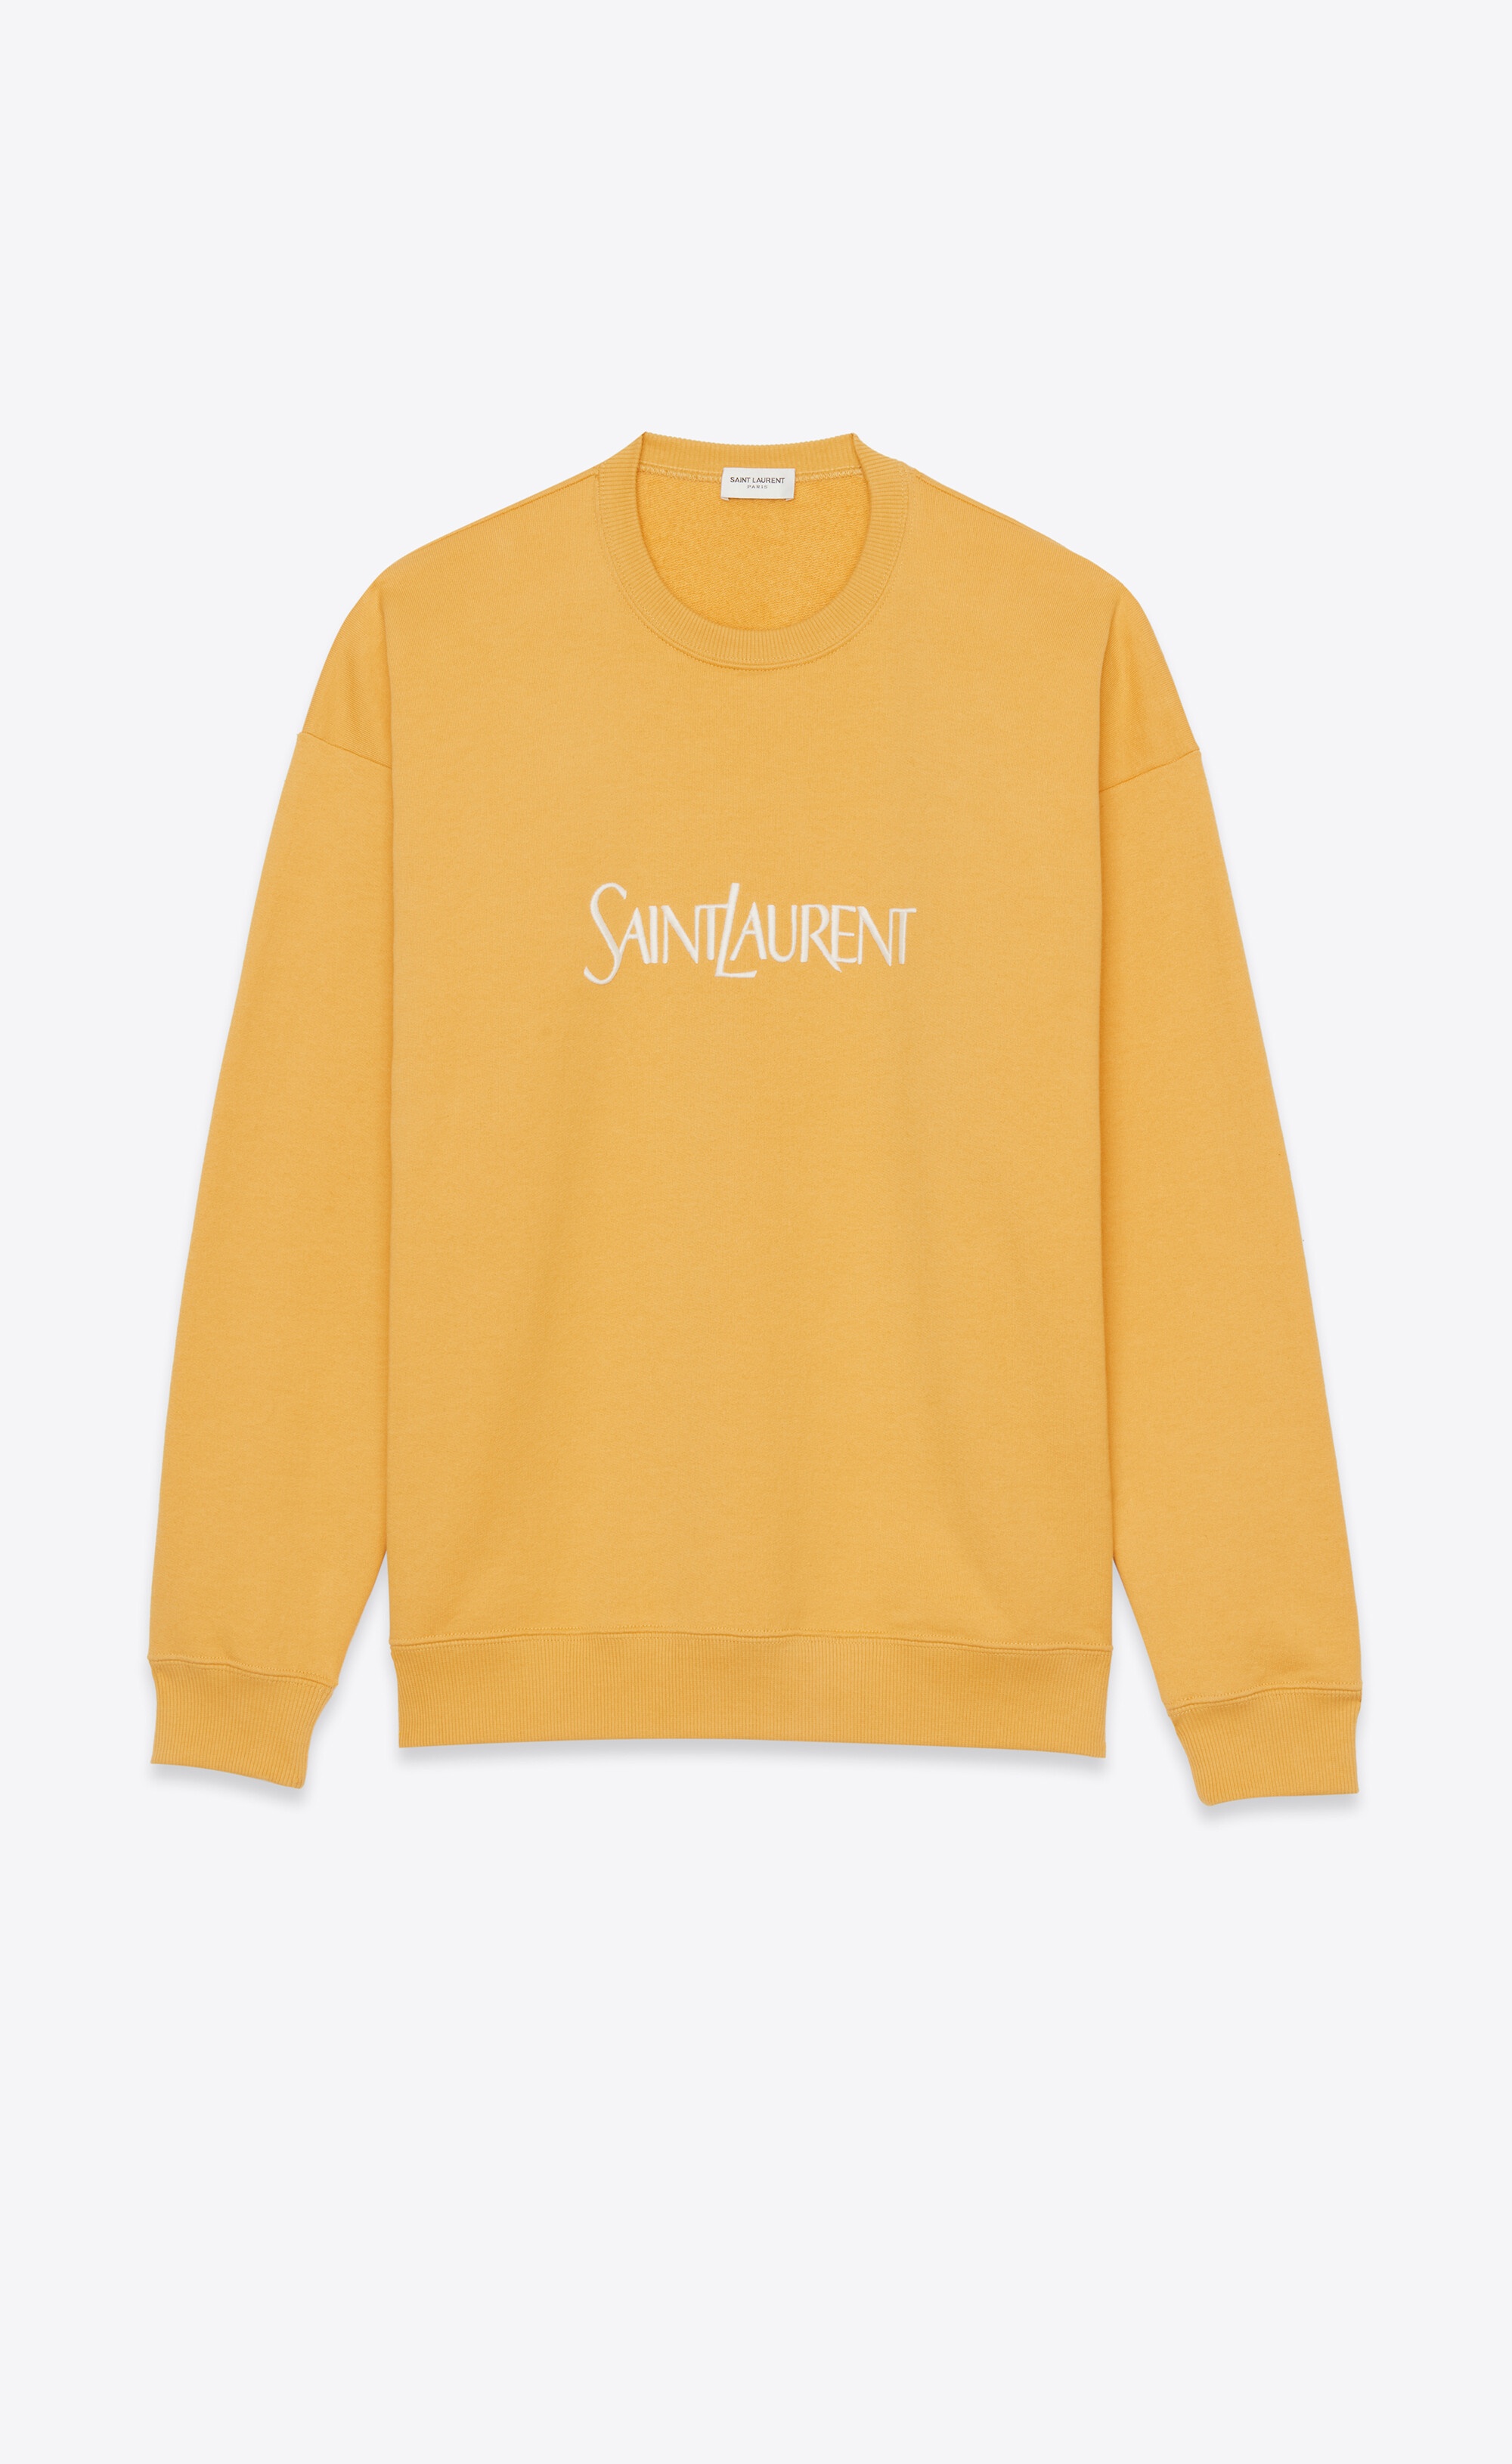 saint laurent sweatshirt - 1